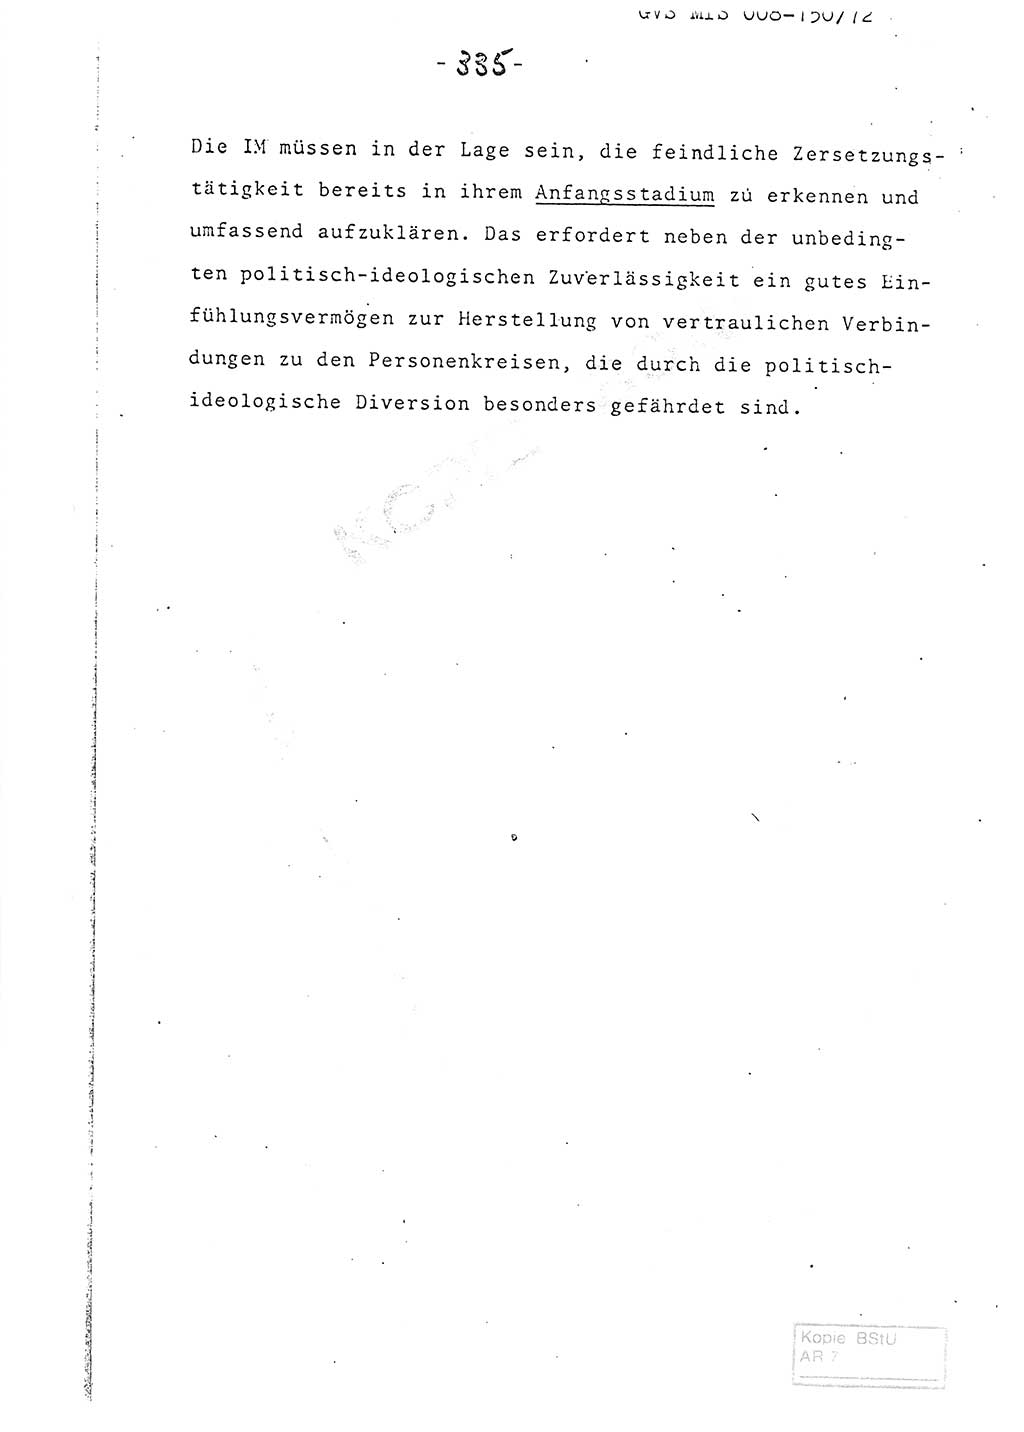 Referat (Entwurf) des Genossen Minister (Generaloberst Erich Mielke) auf der Dienstkonferenz 1972, Ministerium für Staatssicherheit (MfS) [Deutsche Demokratische Republik (DDR)], Der Minister, Geheime Verschlußsache (GVS) 008-150/72, Berlin 25.2.1972, Seite 335 (Ref. Entw. DK MfS DDR Min. GVS 008-150/72 1972, S. 335)